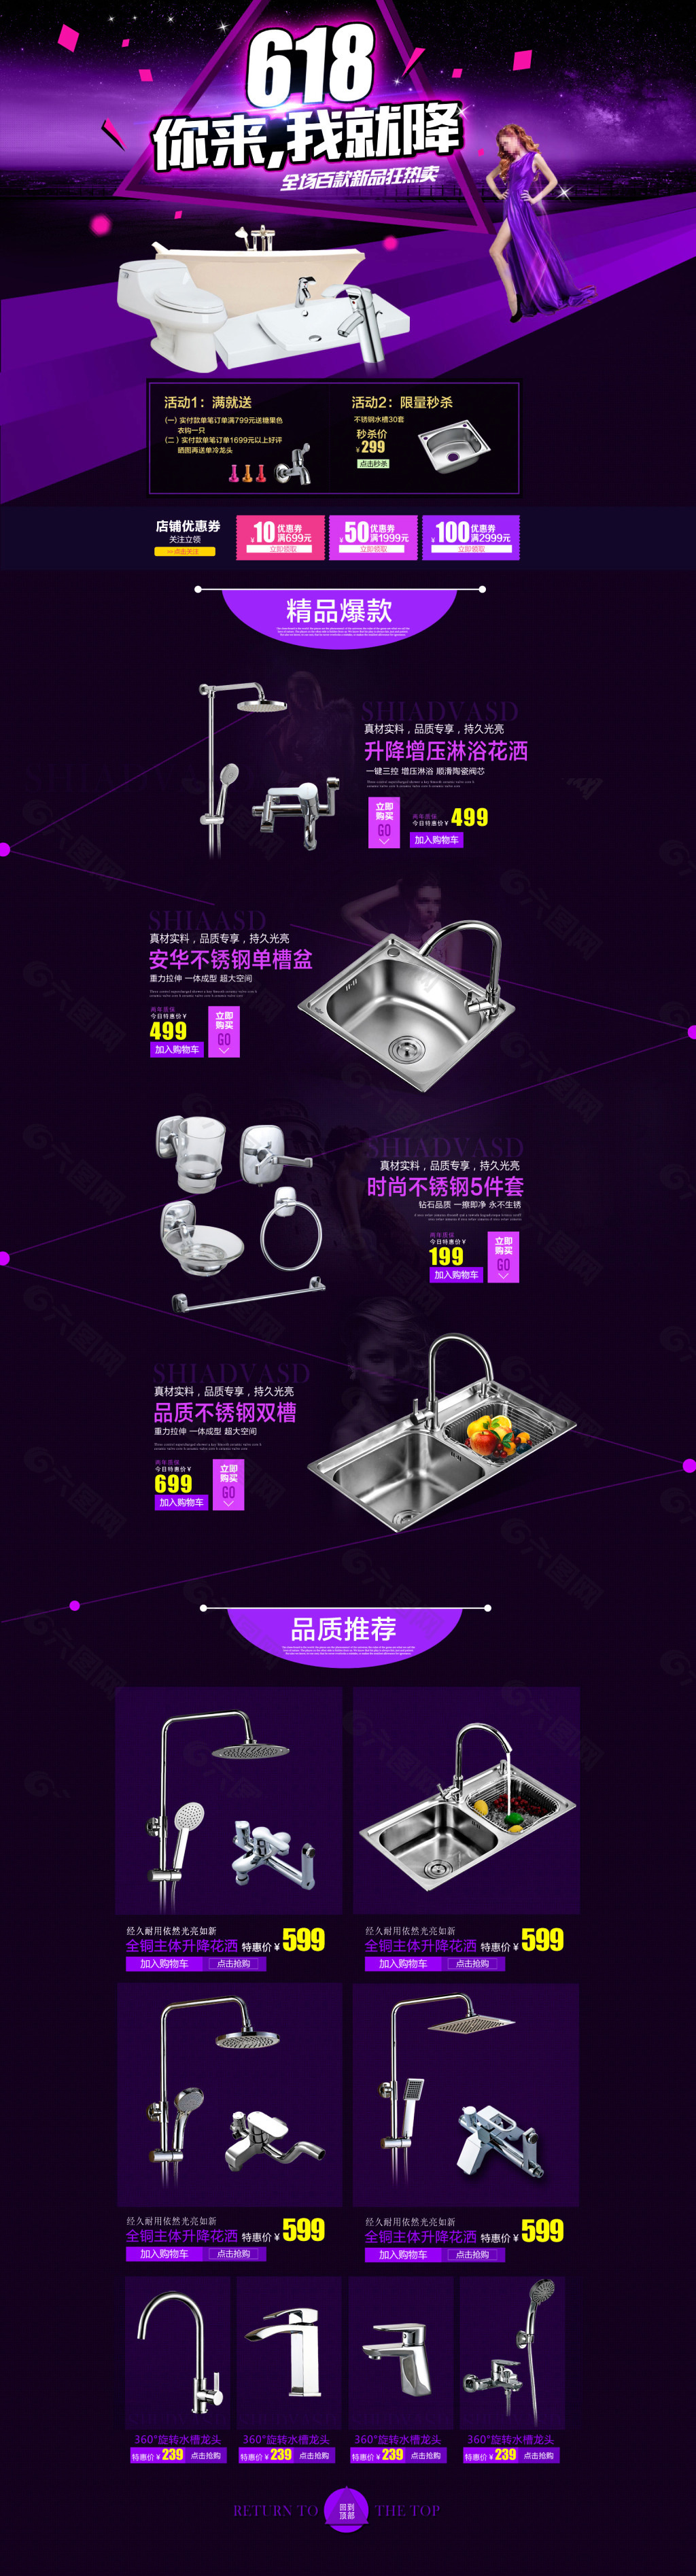 京东618卫浴店铺紫色调首页设计